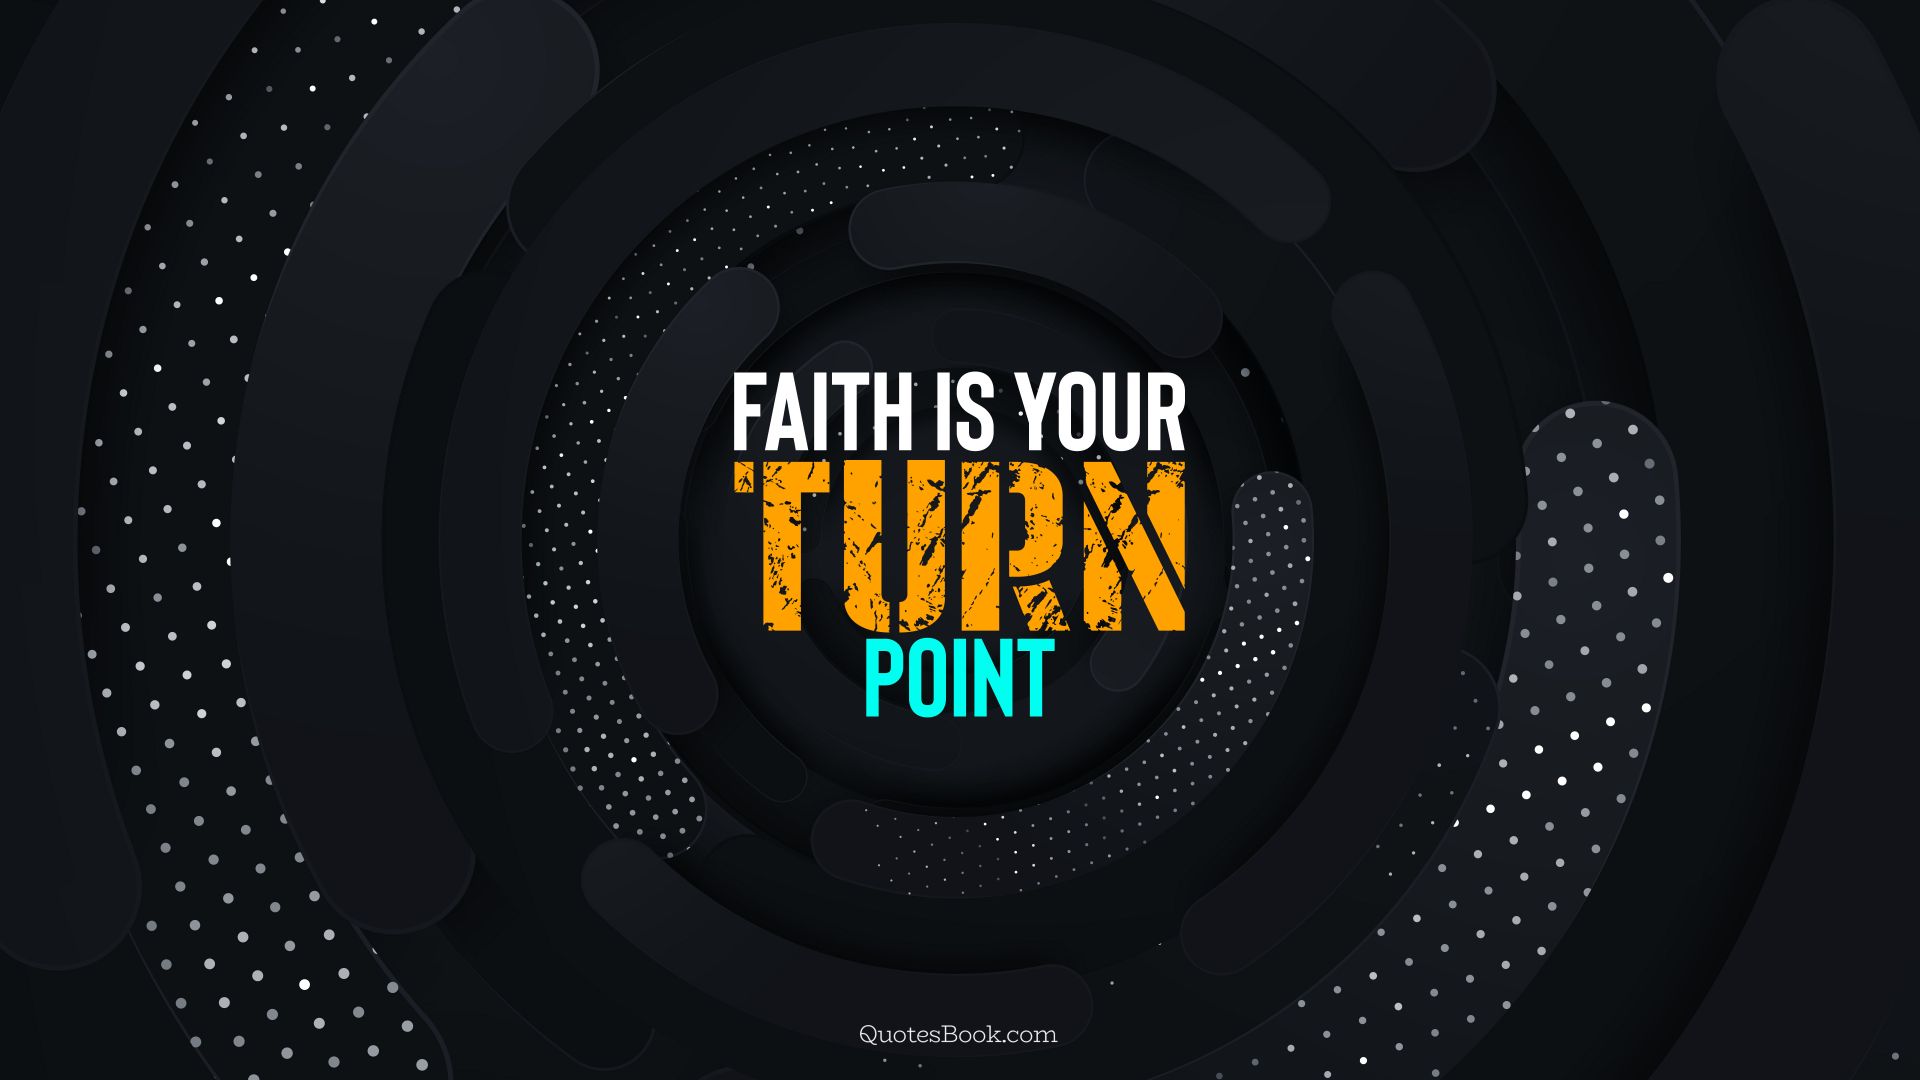 Faith is your turn point